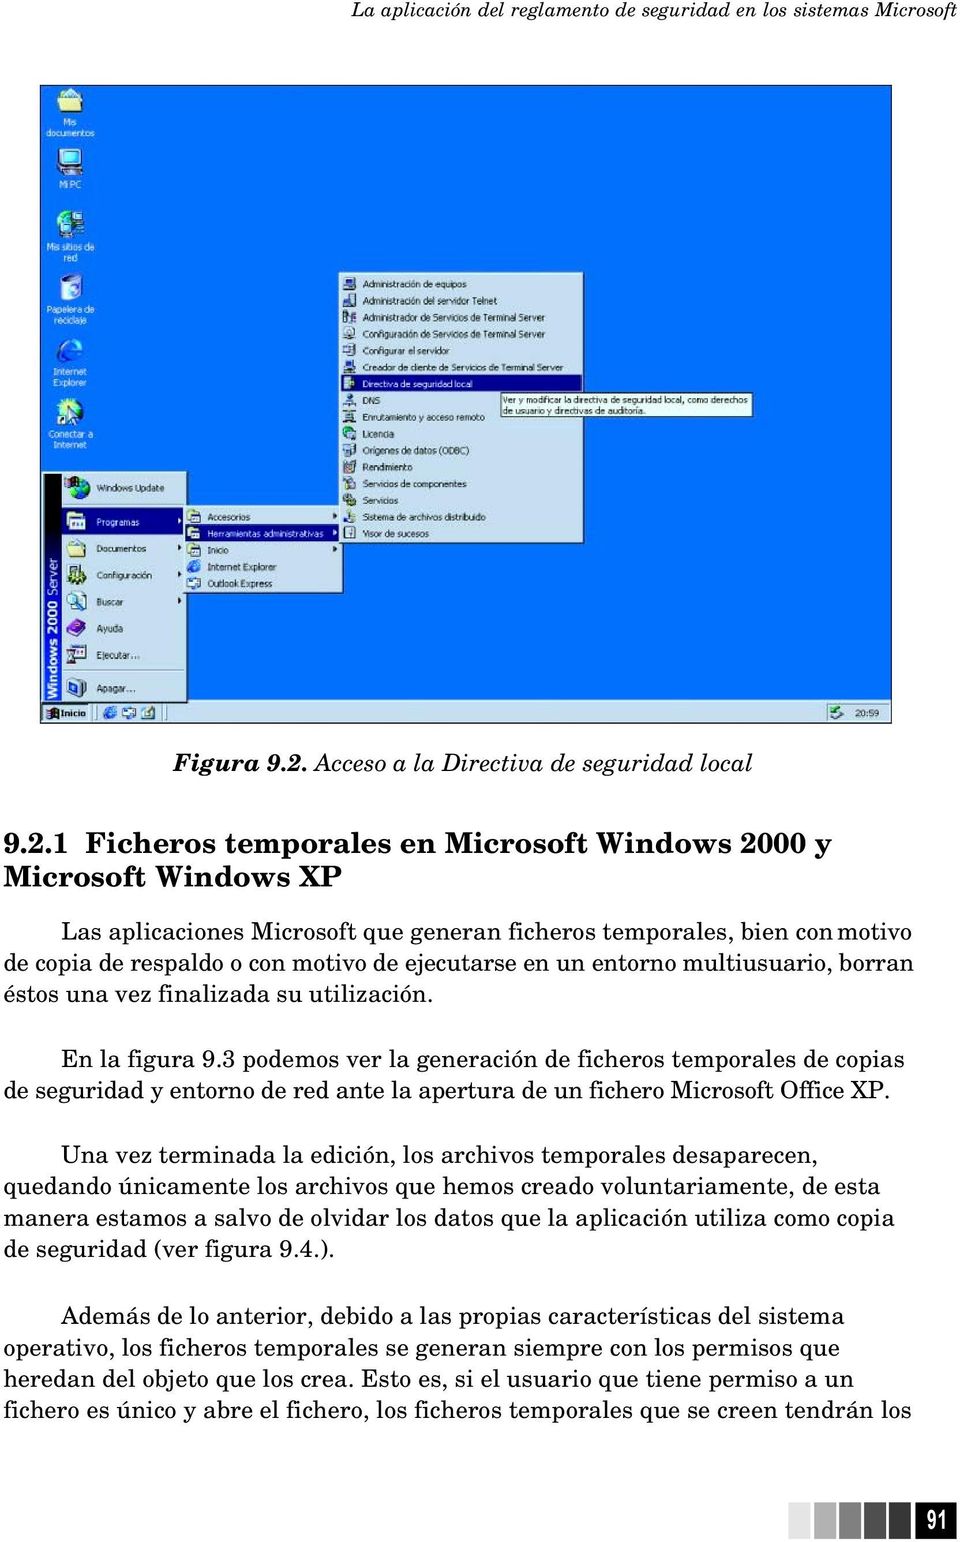 1 Ficheros temporales en Microsoft Windows 2000 y Microsoft Windows XP Las aplicaciones Microsoft que generan ficheros temporales, bien con motivo de copia de respaldo o con motivo de ejecutarse en